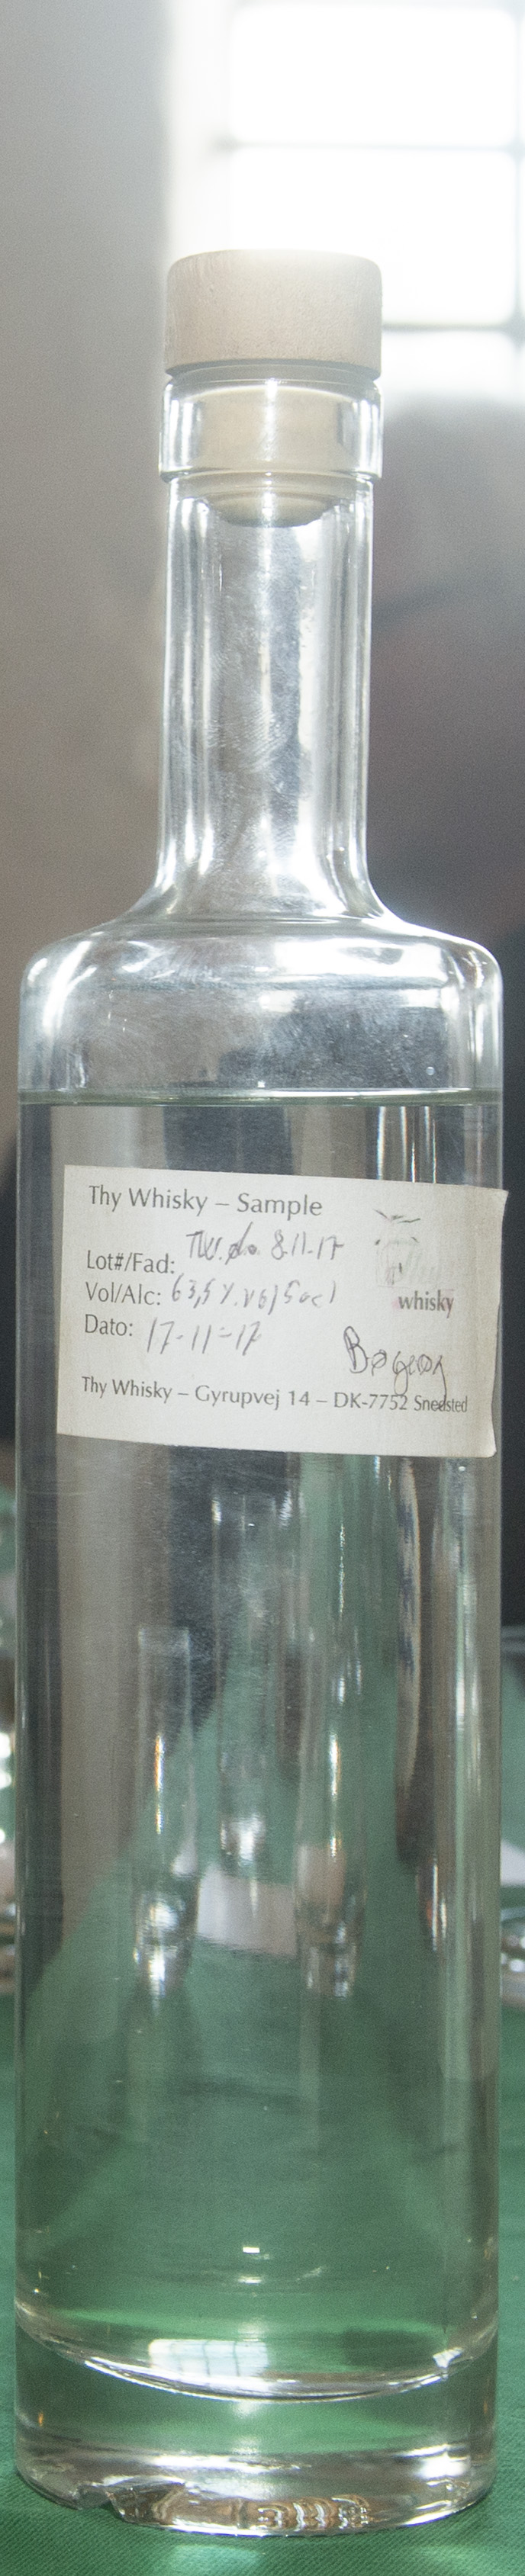 Billede: DSC_4002 - Thy Whisky new make boegeroeg.jpg